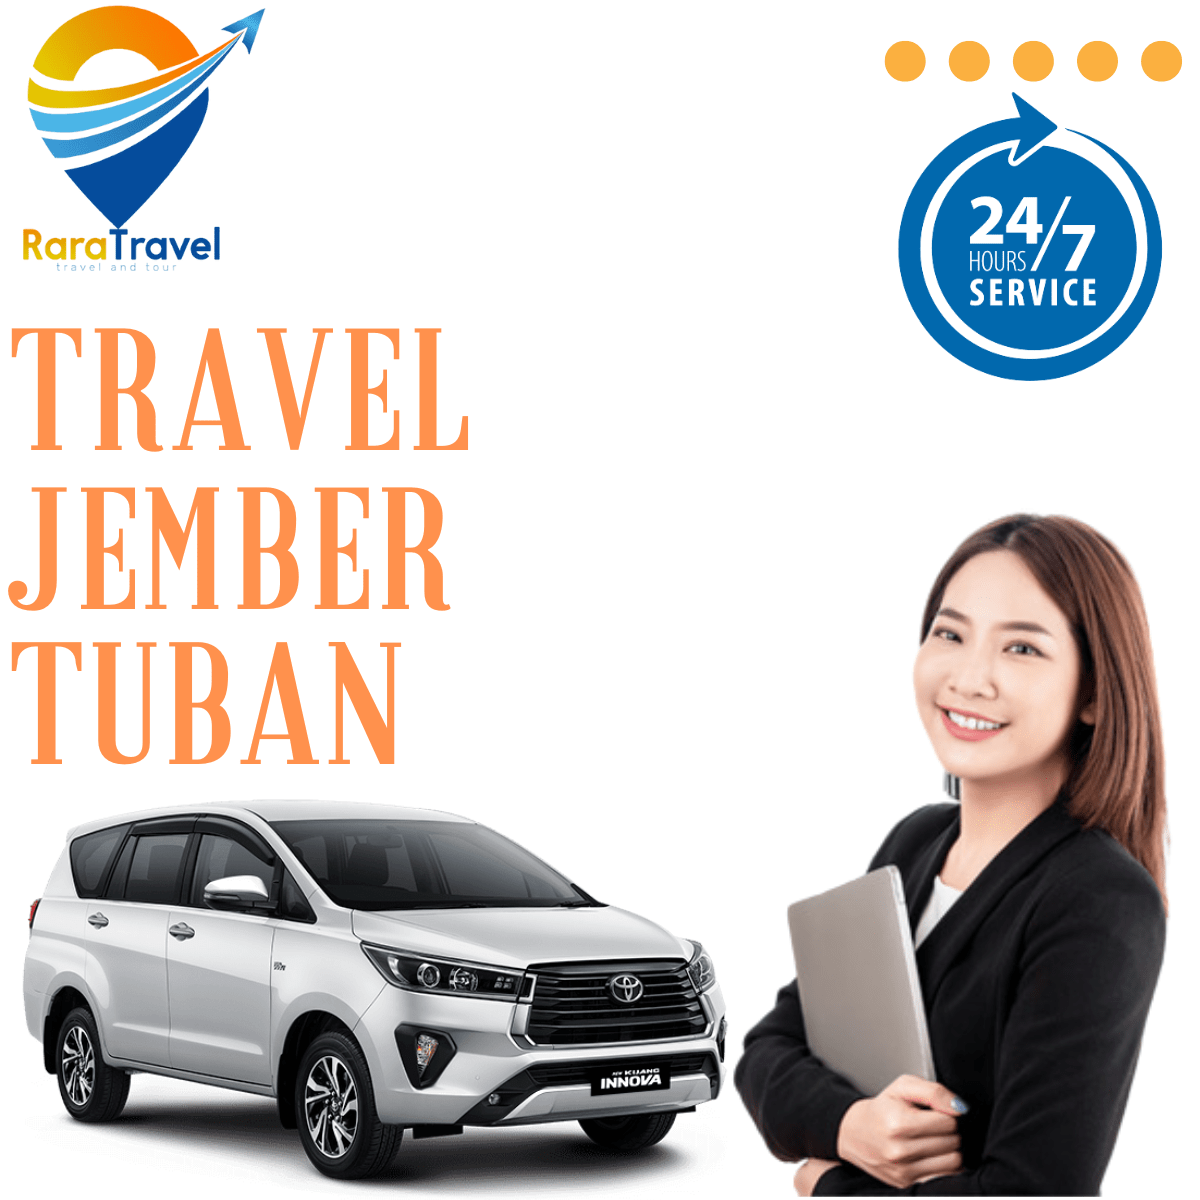 Travel Jember Tuban Harga Tiket Murah - RARATRAVEL.ID